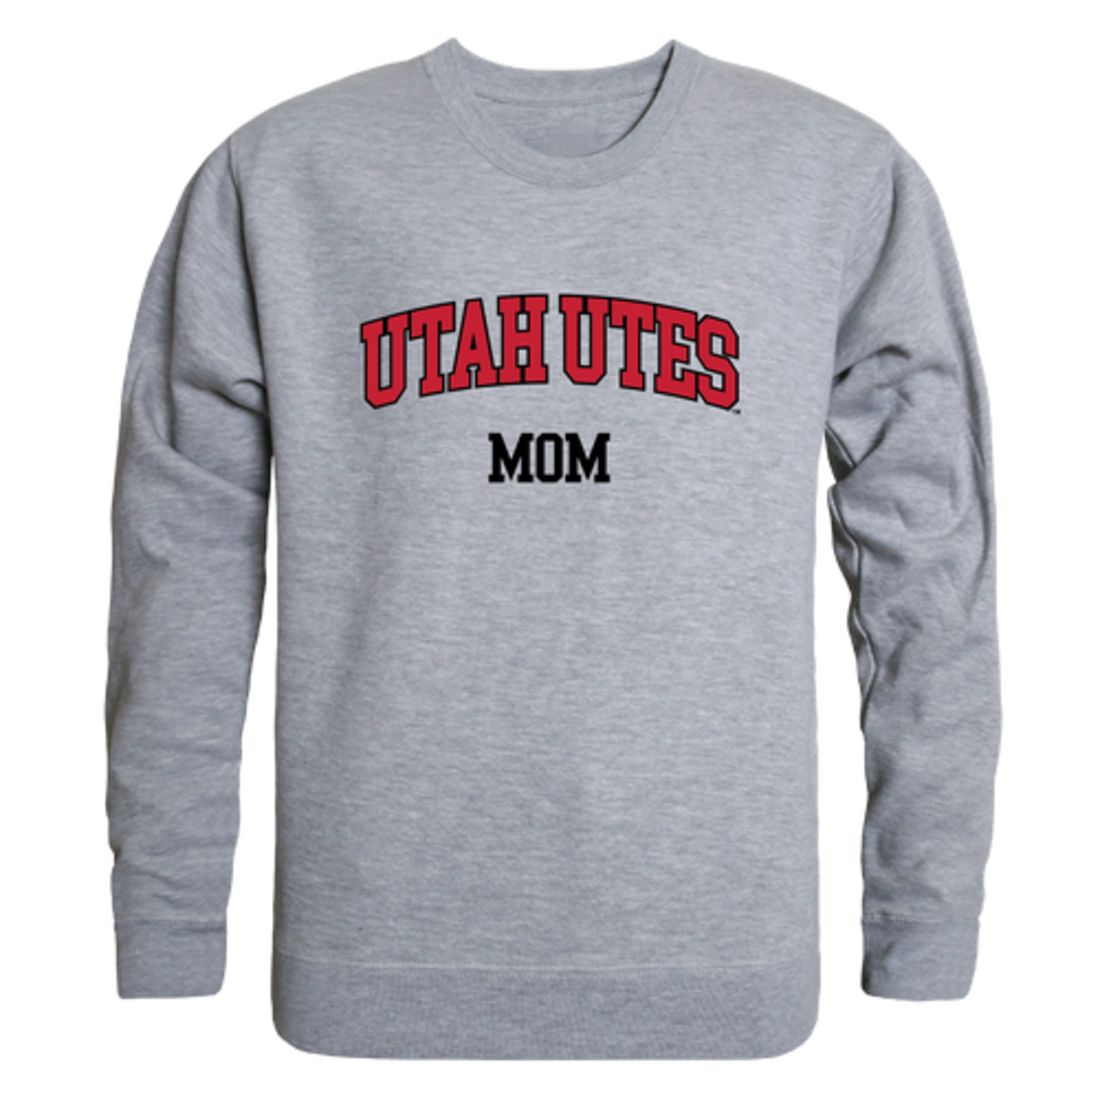 University of Utah Utes Mom Fleece Crewneck Pullover Sweatshirt Heather Grey Small-Campus-Wardrobe